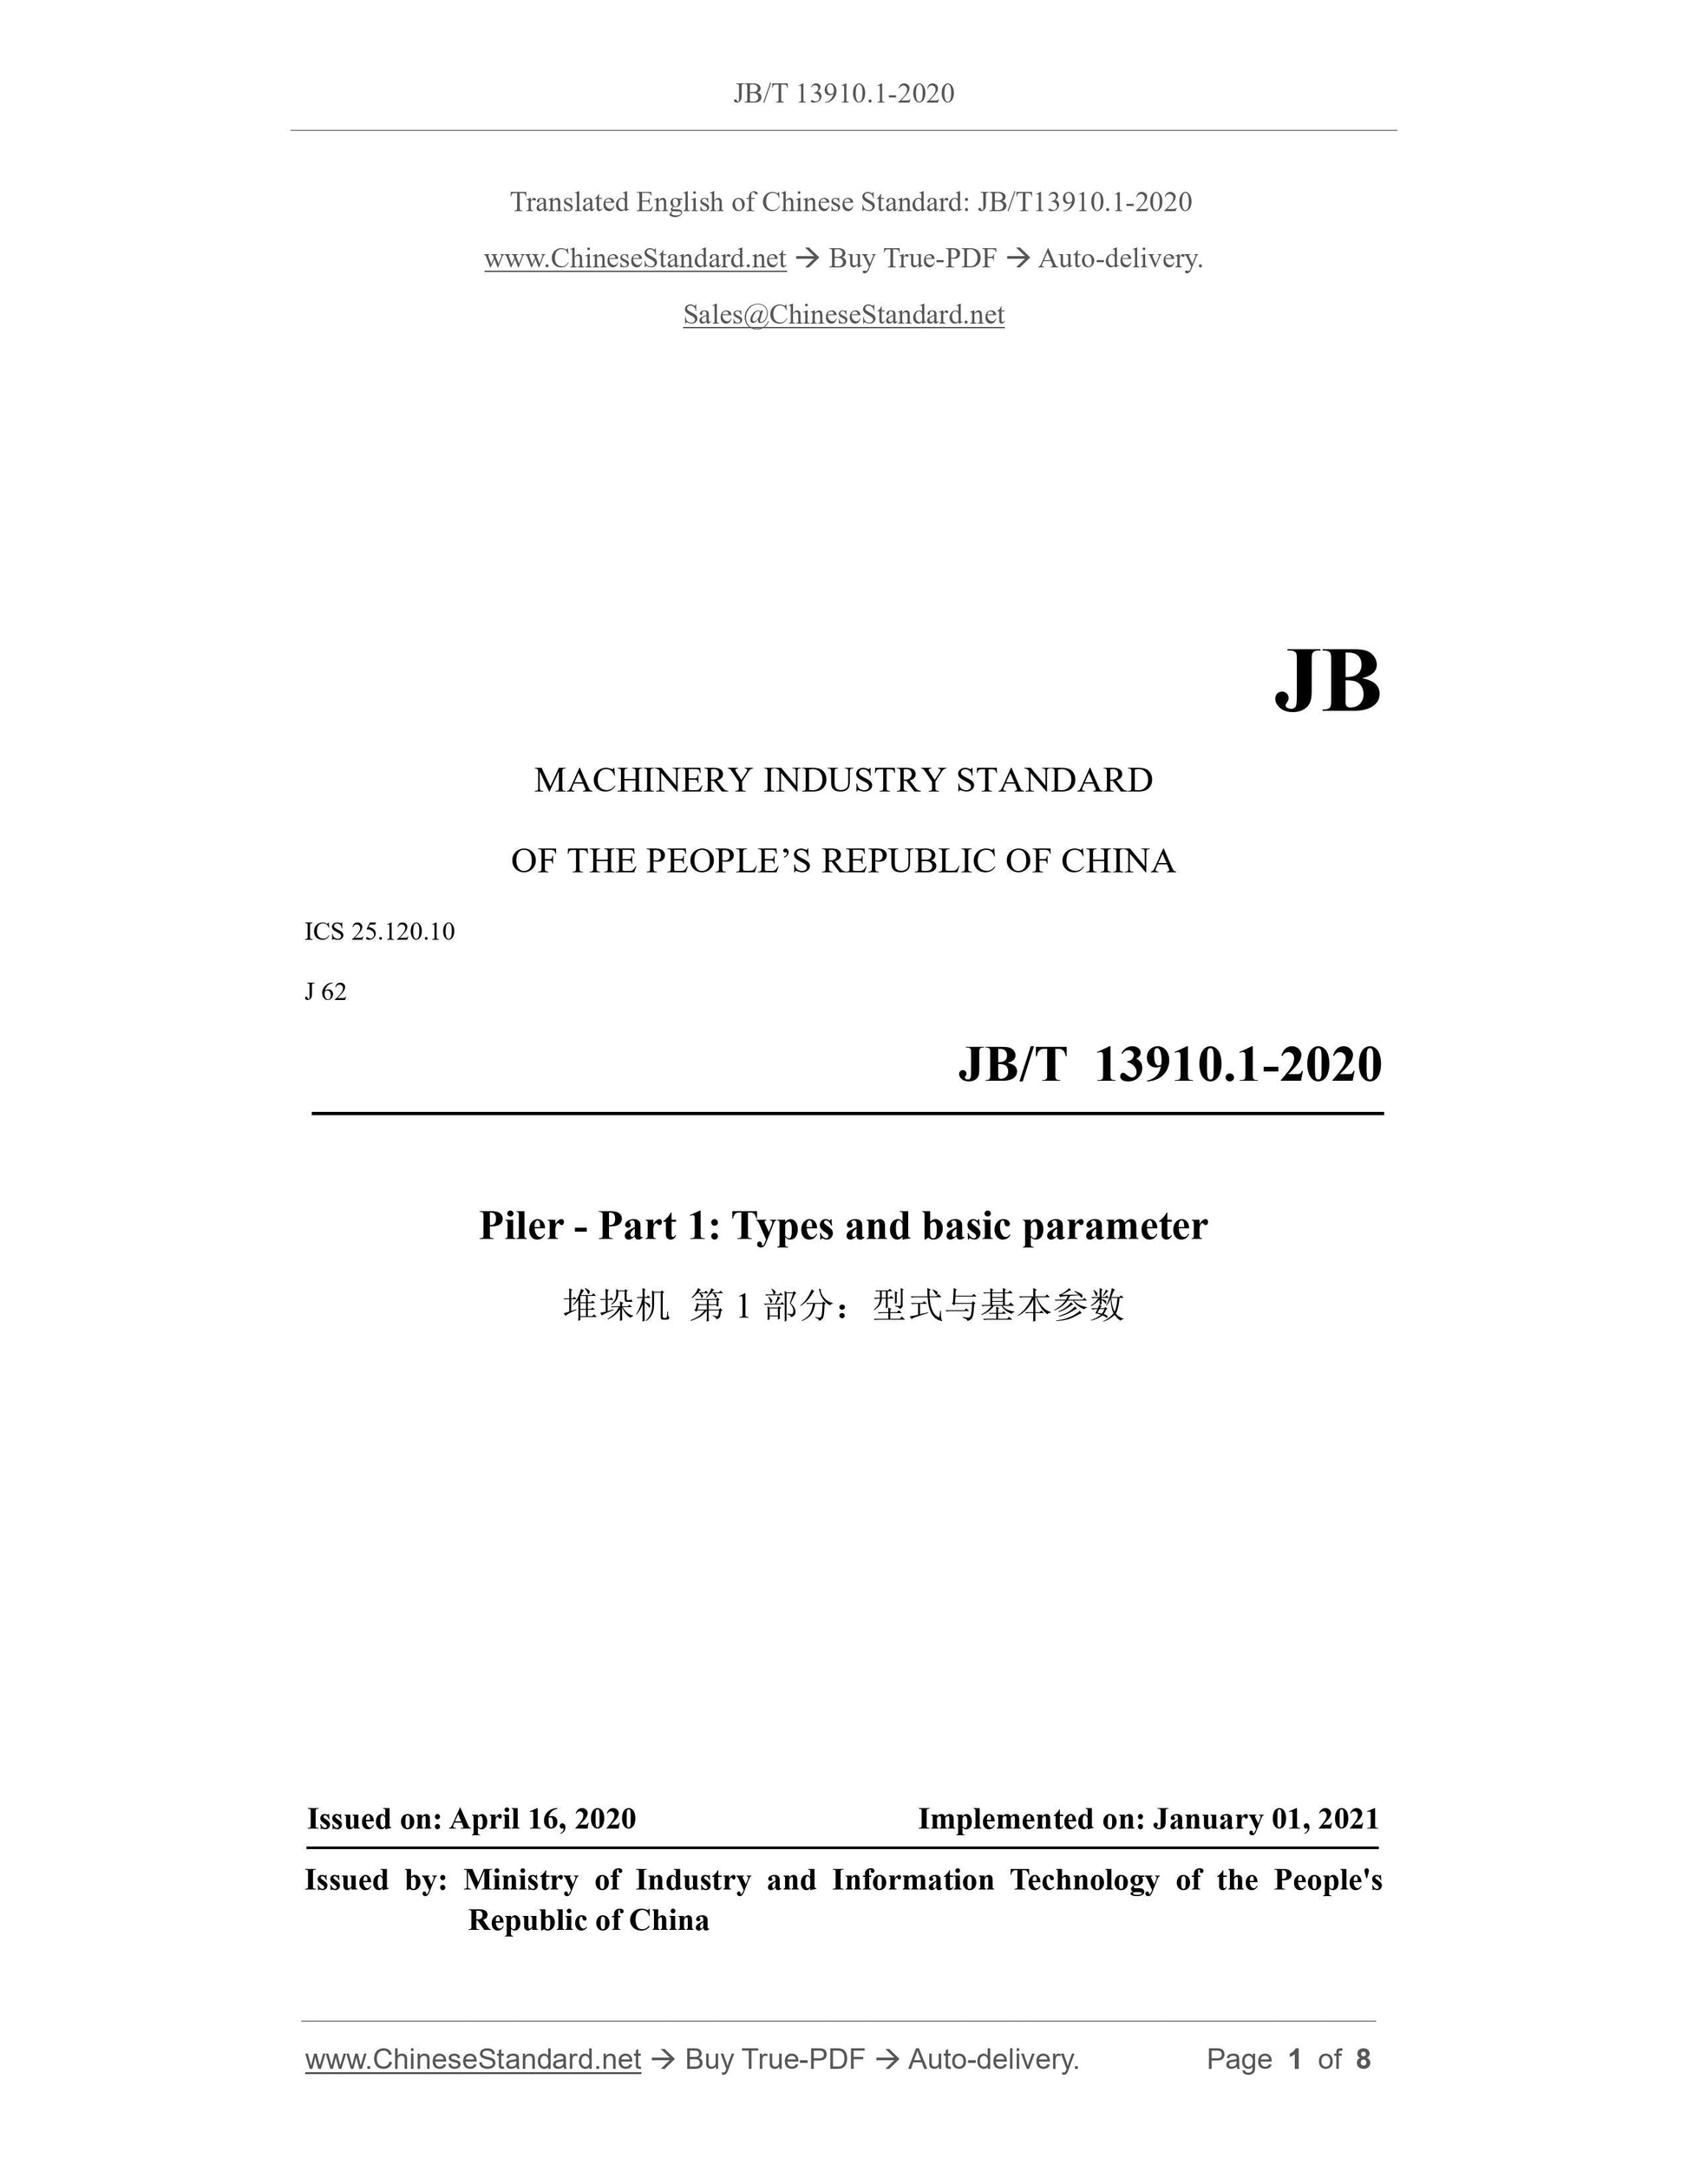 JB/T 13910.1-2020 Page 1